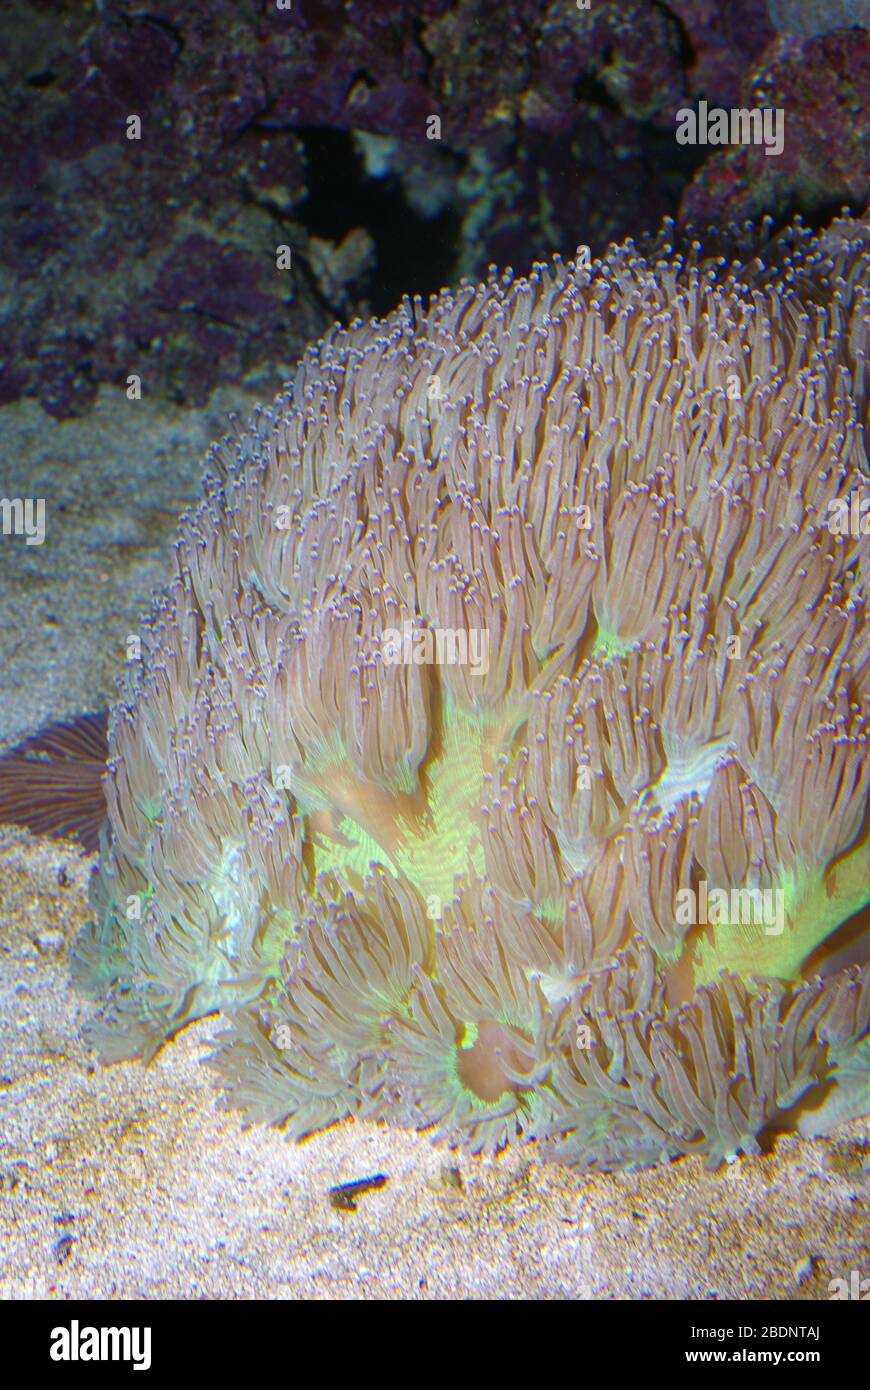 Elegance coral, Catalaphyllia jardinei Stock Photo